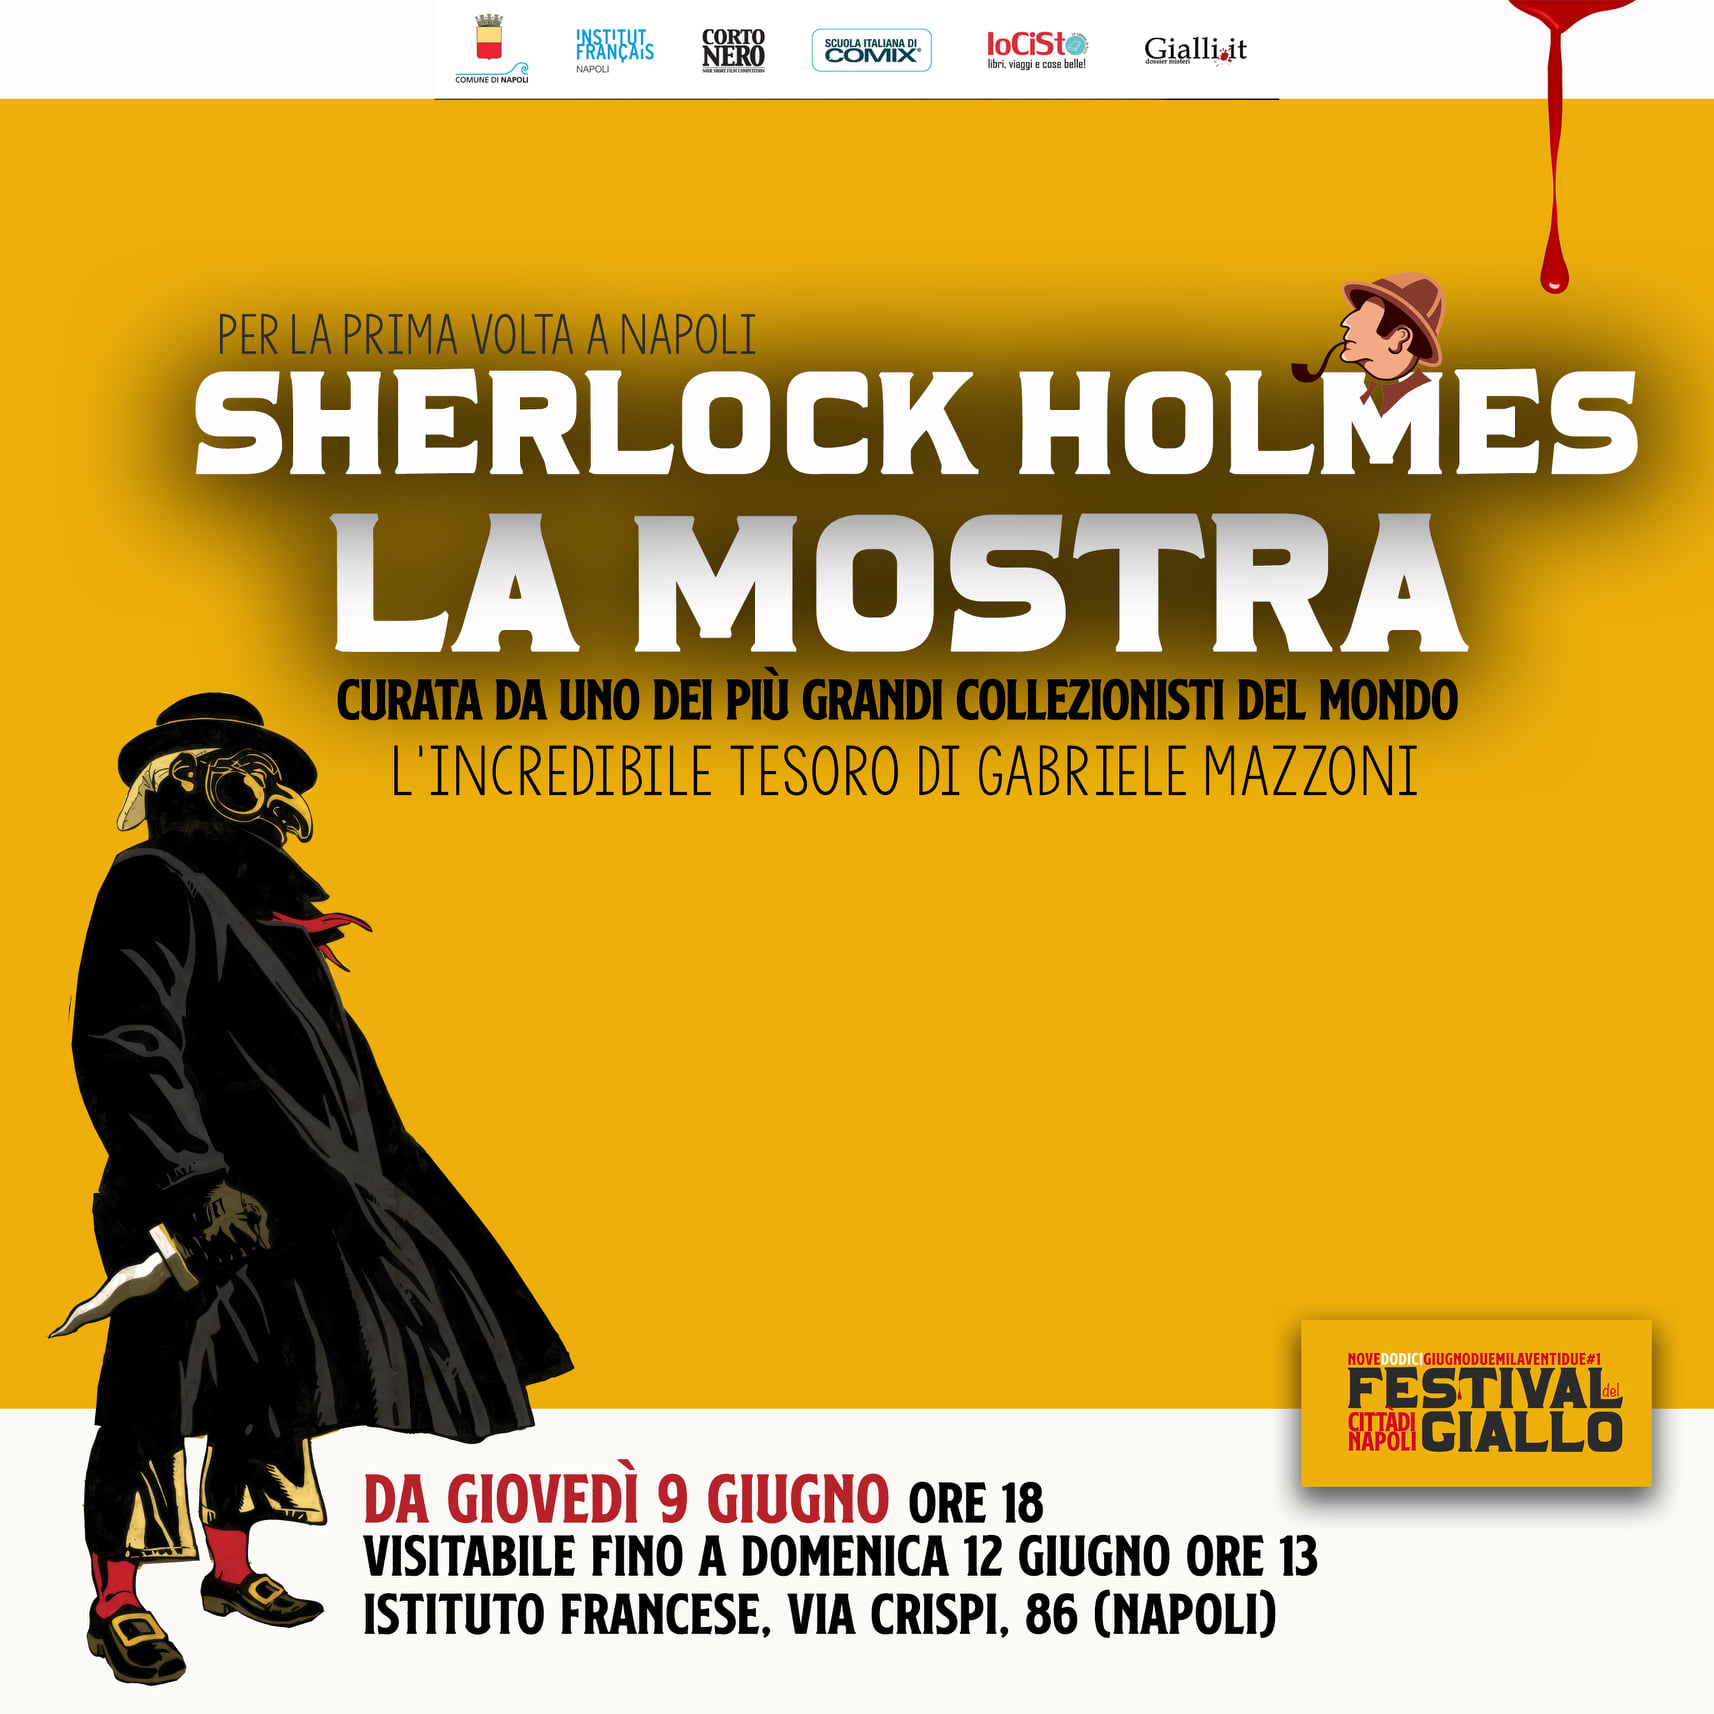 Festival del Giallo, dalla mostra su Sherlock Holmes all'incontro tra de Giovanni e Lucarelli